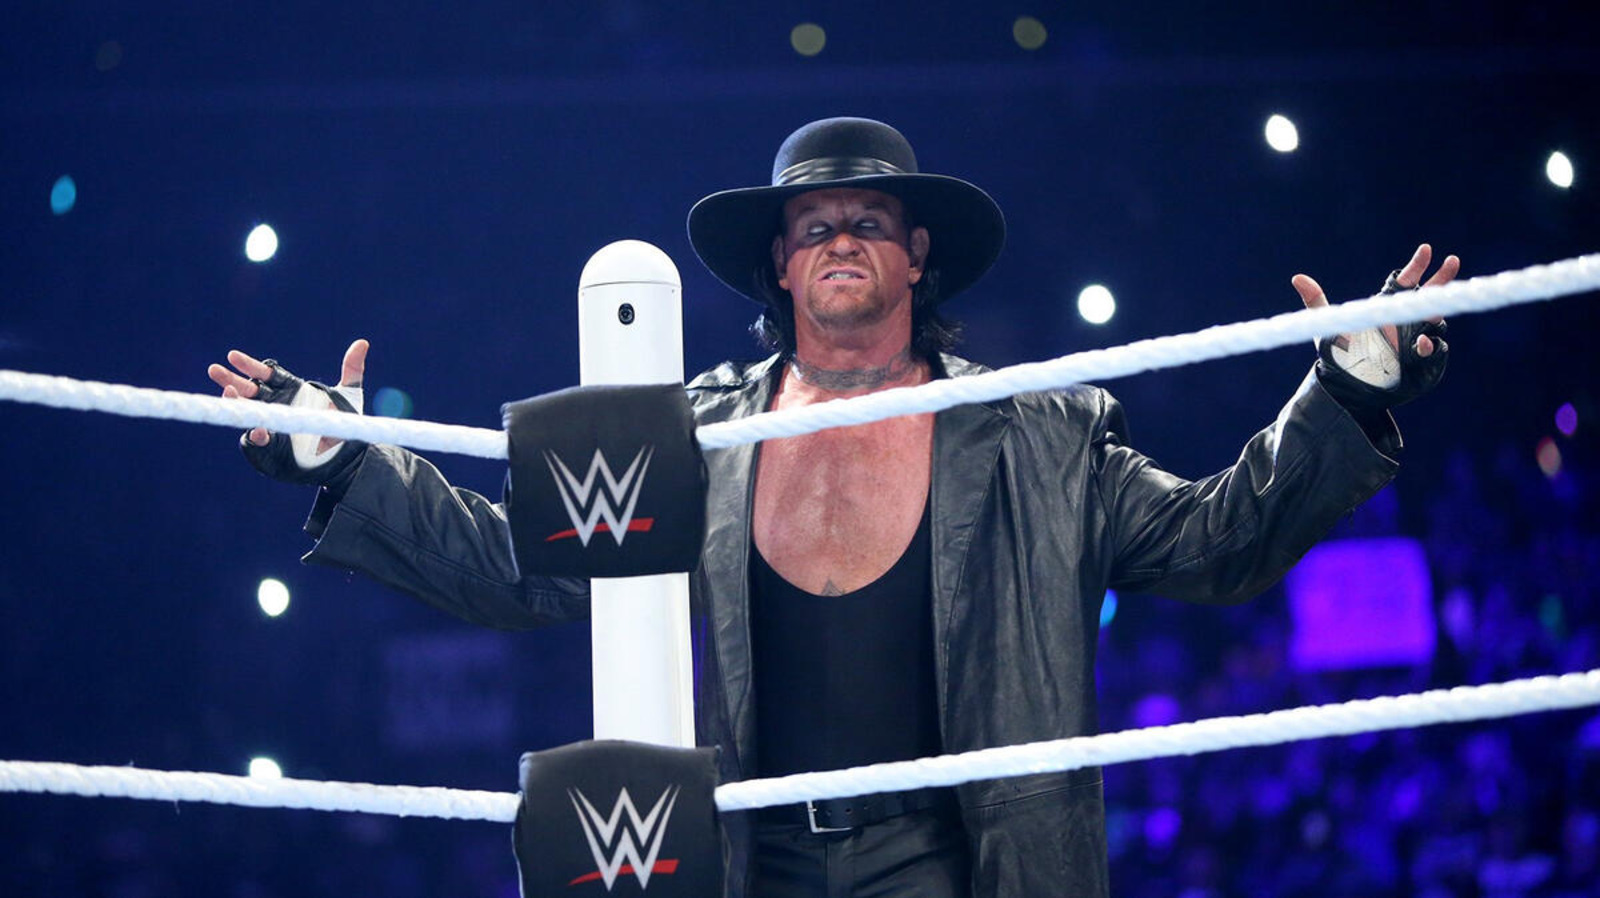 El miembro del Salón de la Fama de la WWE, The Undertaker, contrasta su trabajo con la violencia por el simple hecho de hacerlo